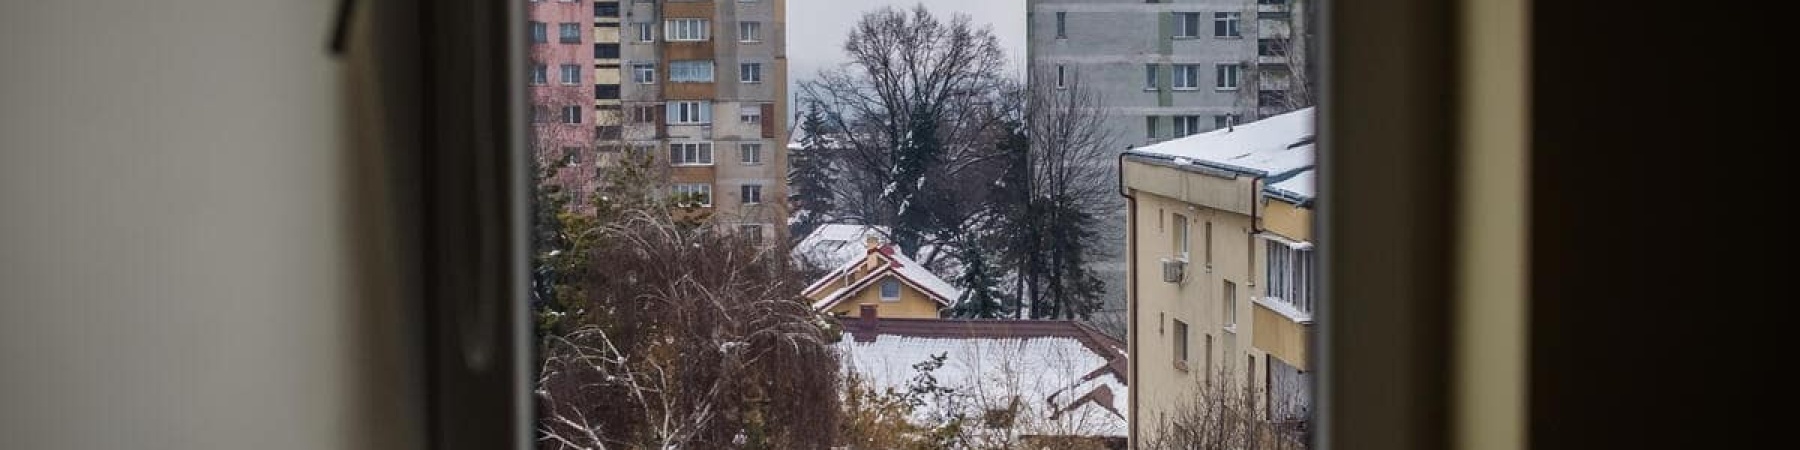 visione da finestra in cui si vede un albero con neve